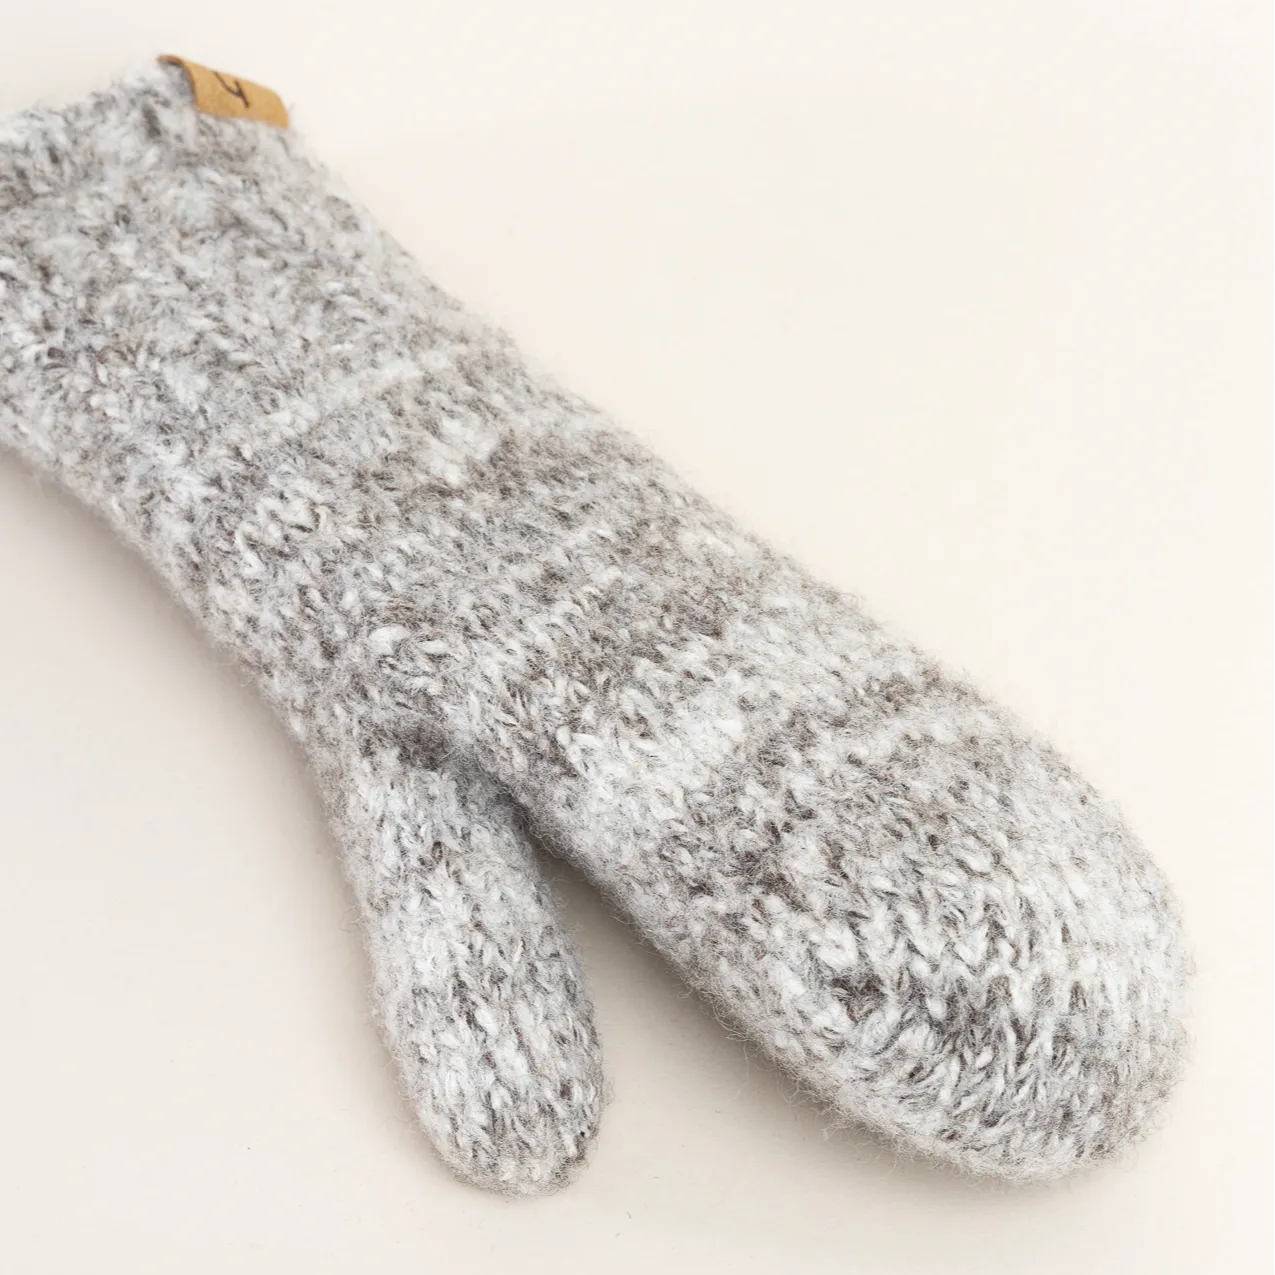 Alpine Wool Glove